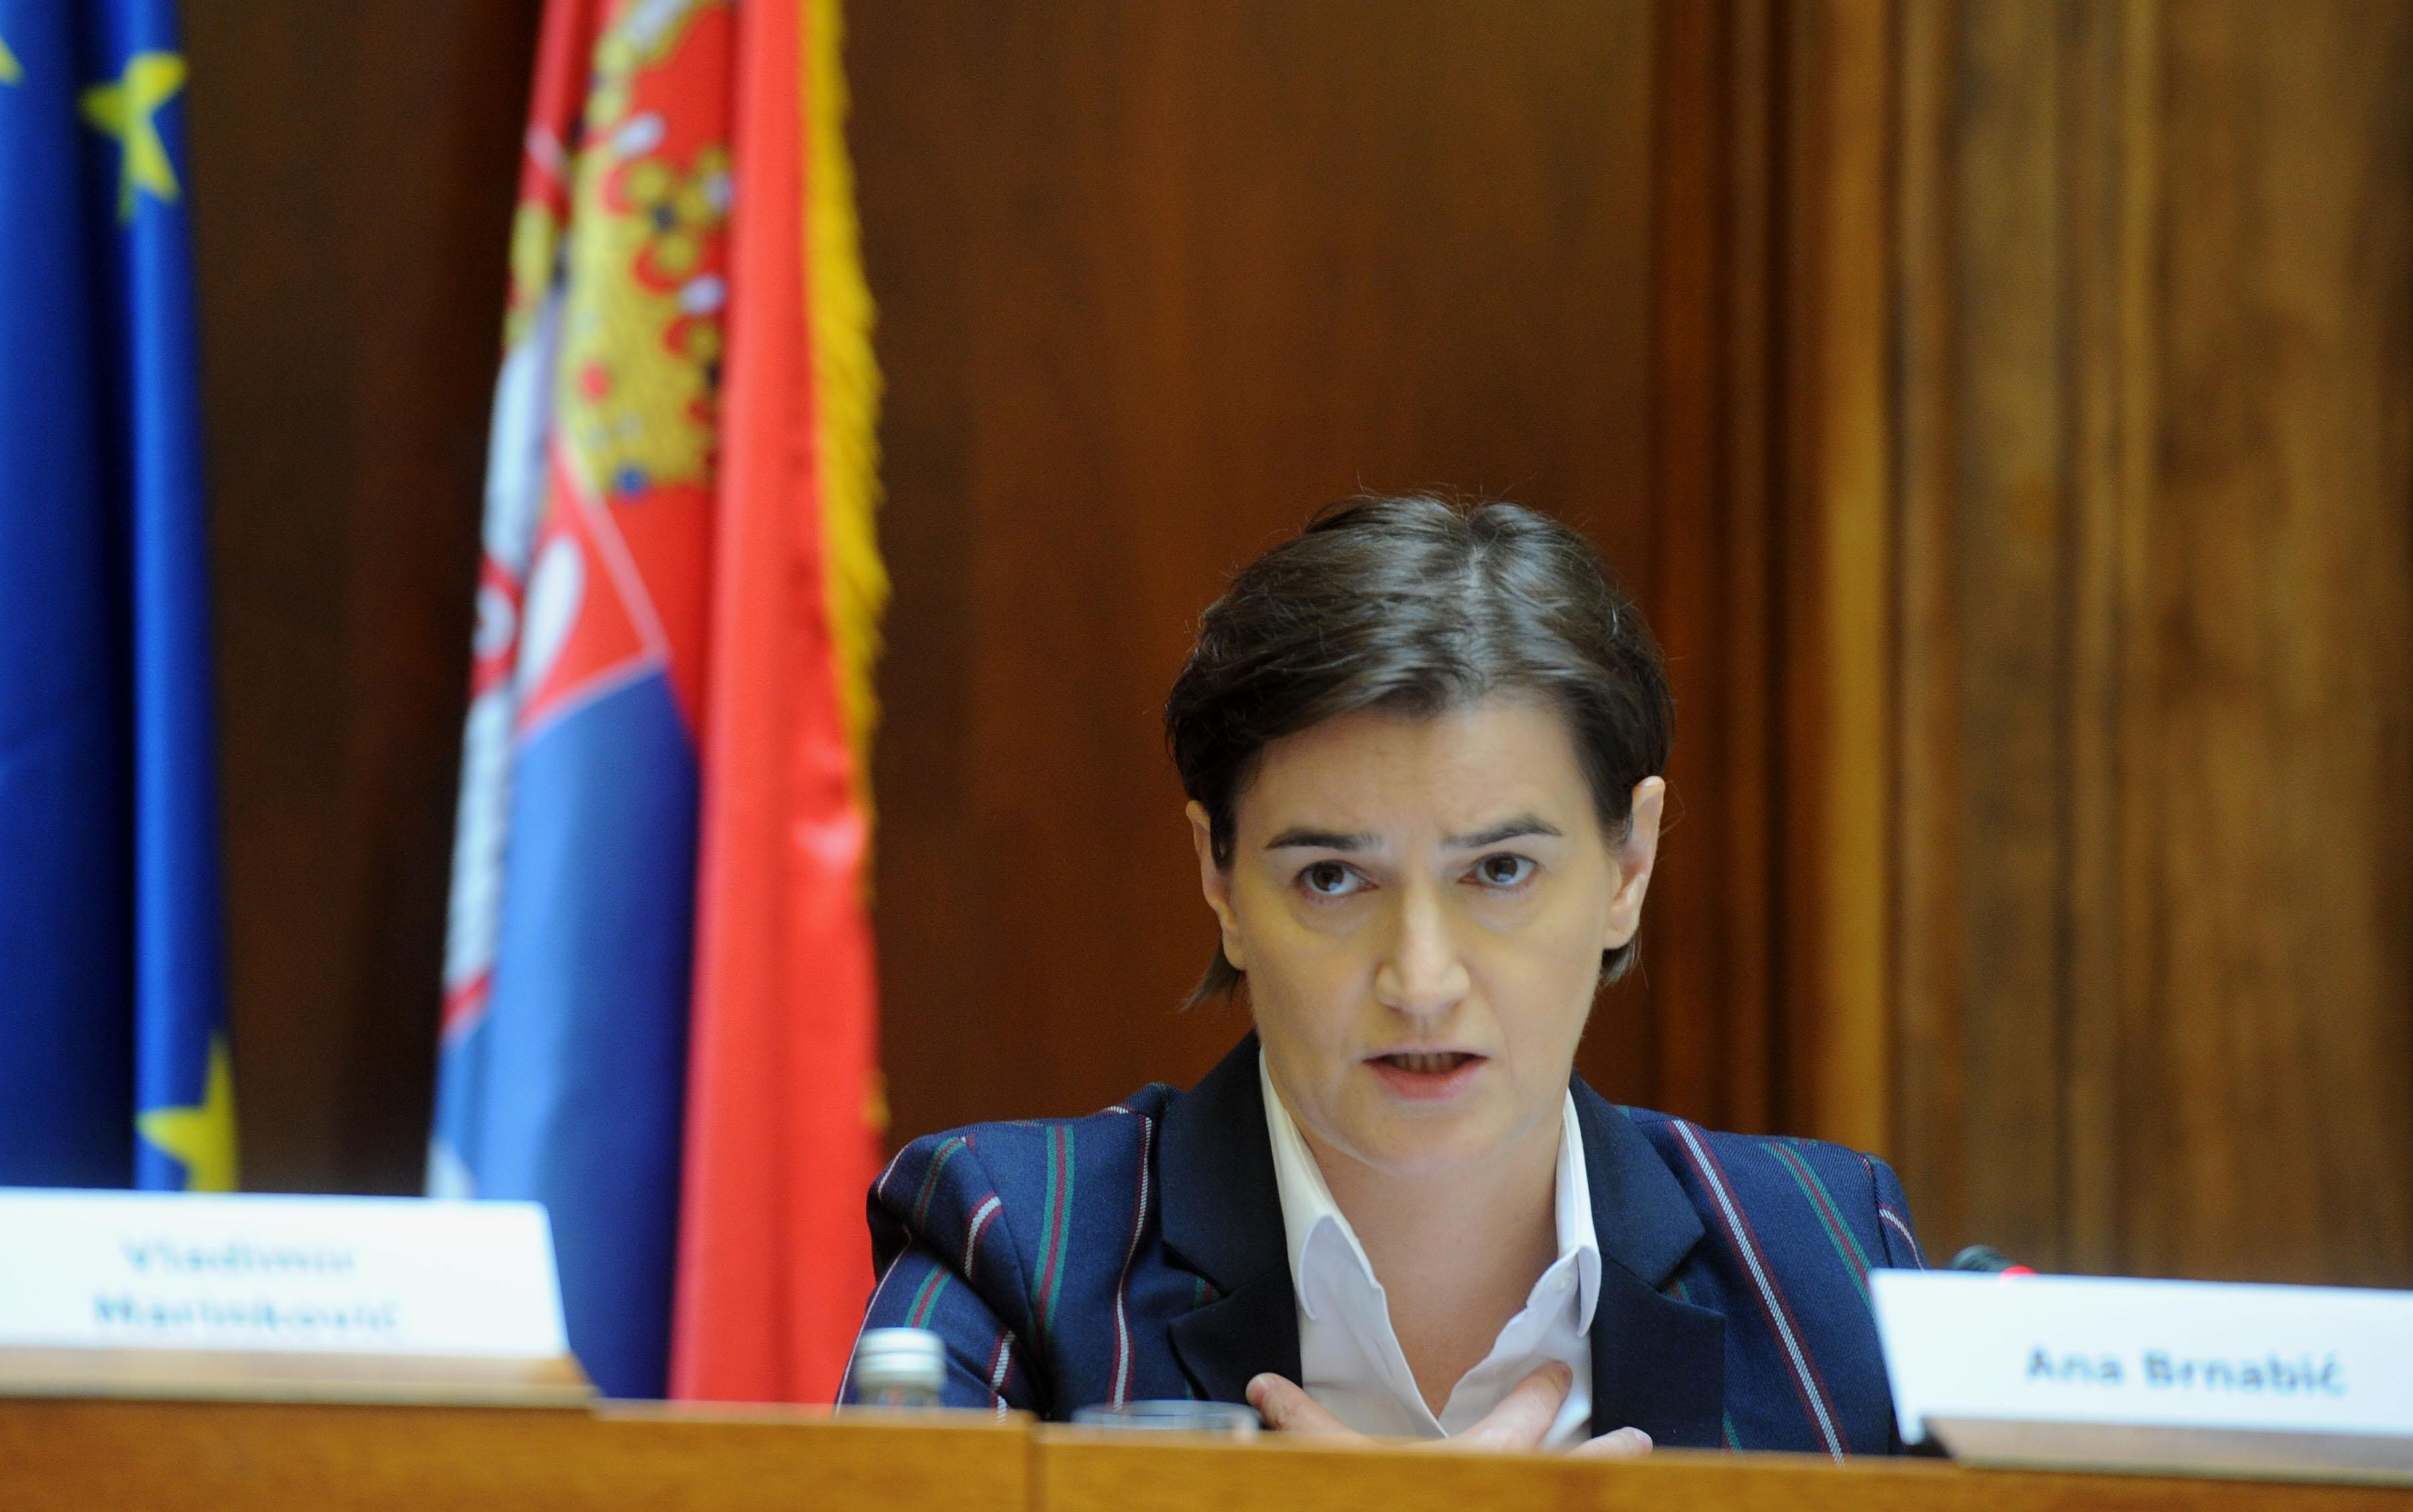 PREMIJERKA NUDILA OSTAVKU ZBOG UDARA MINISTARKI?! Vučić presekao: NE DOLAZI U OBZIR!